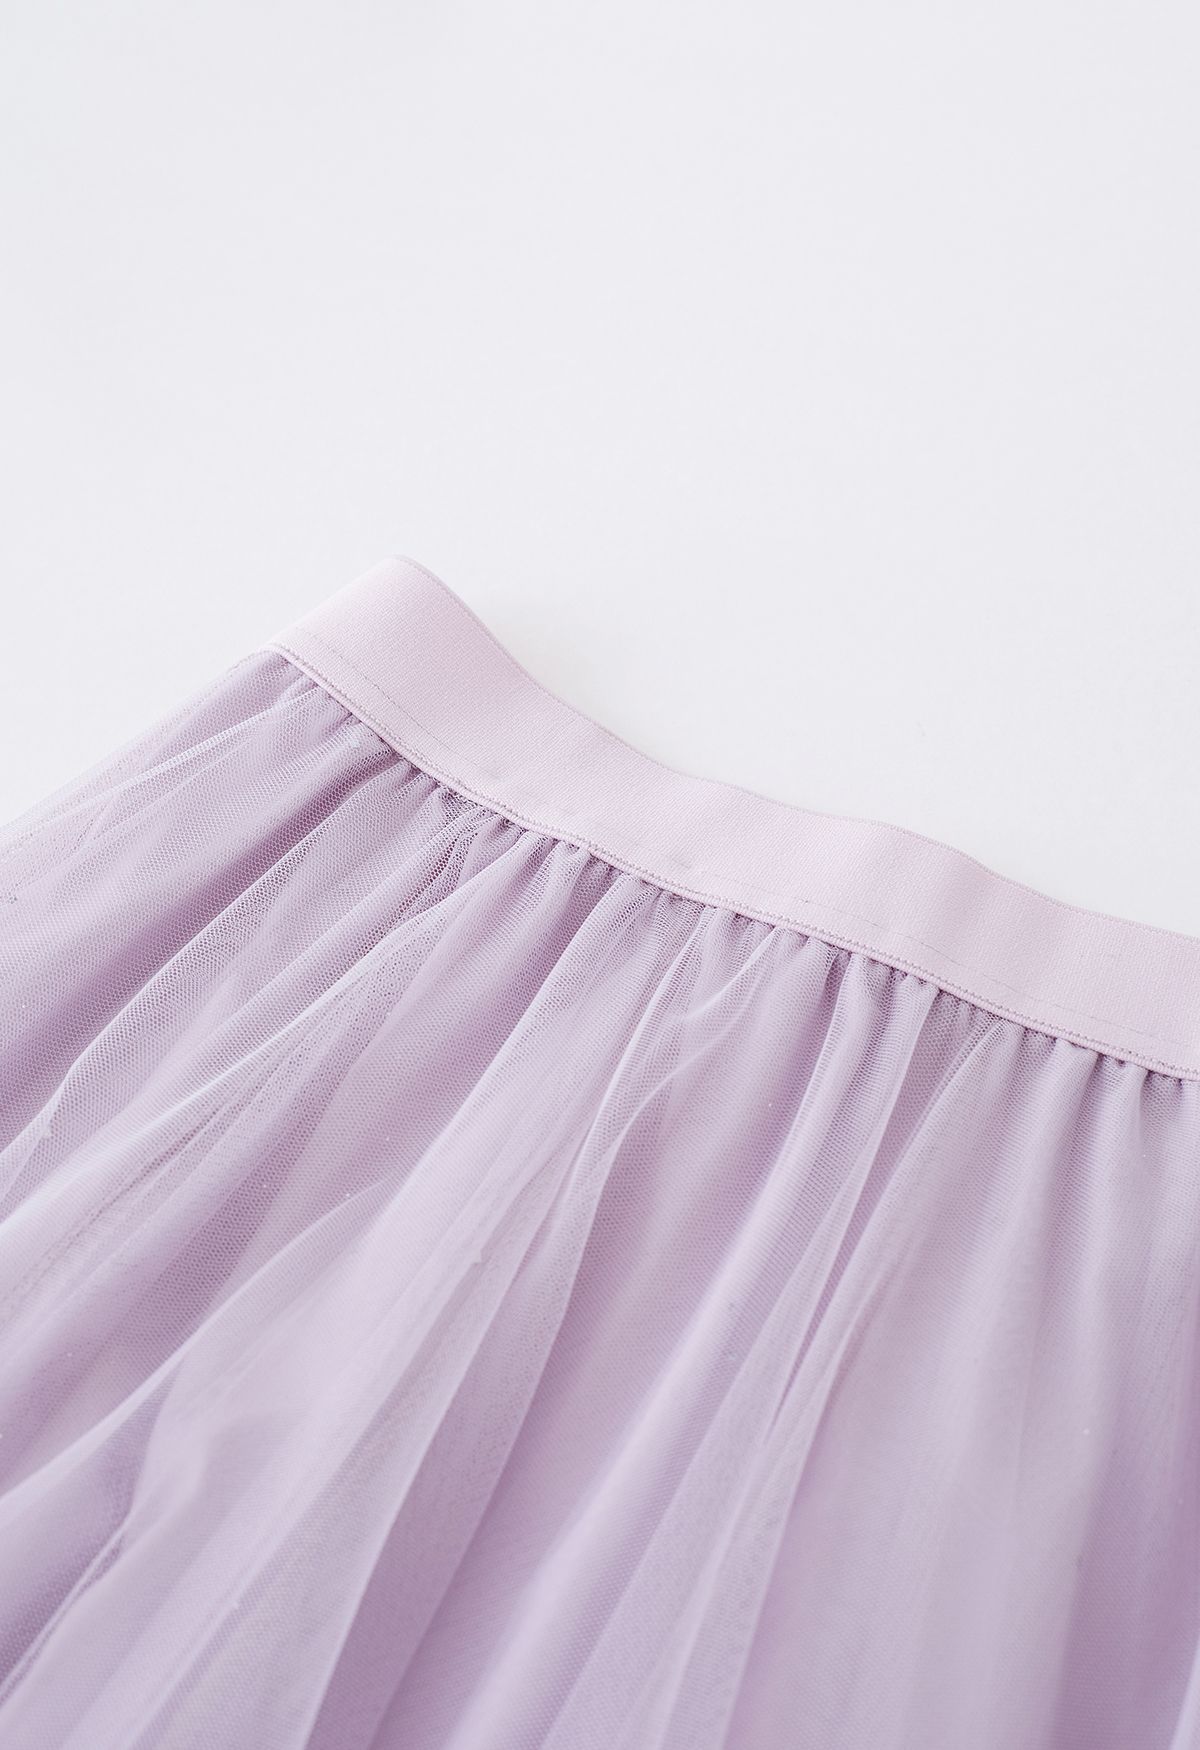 Venus Glitter Mesh Tulle Midi Skirt in Lavender